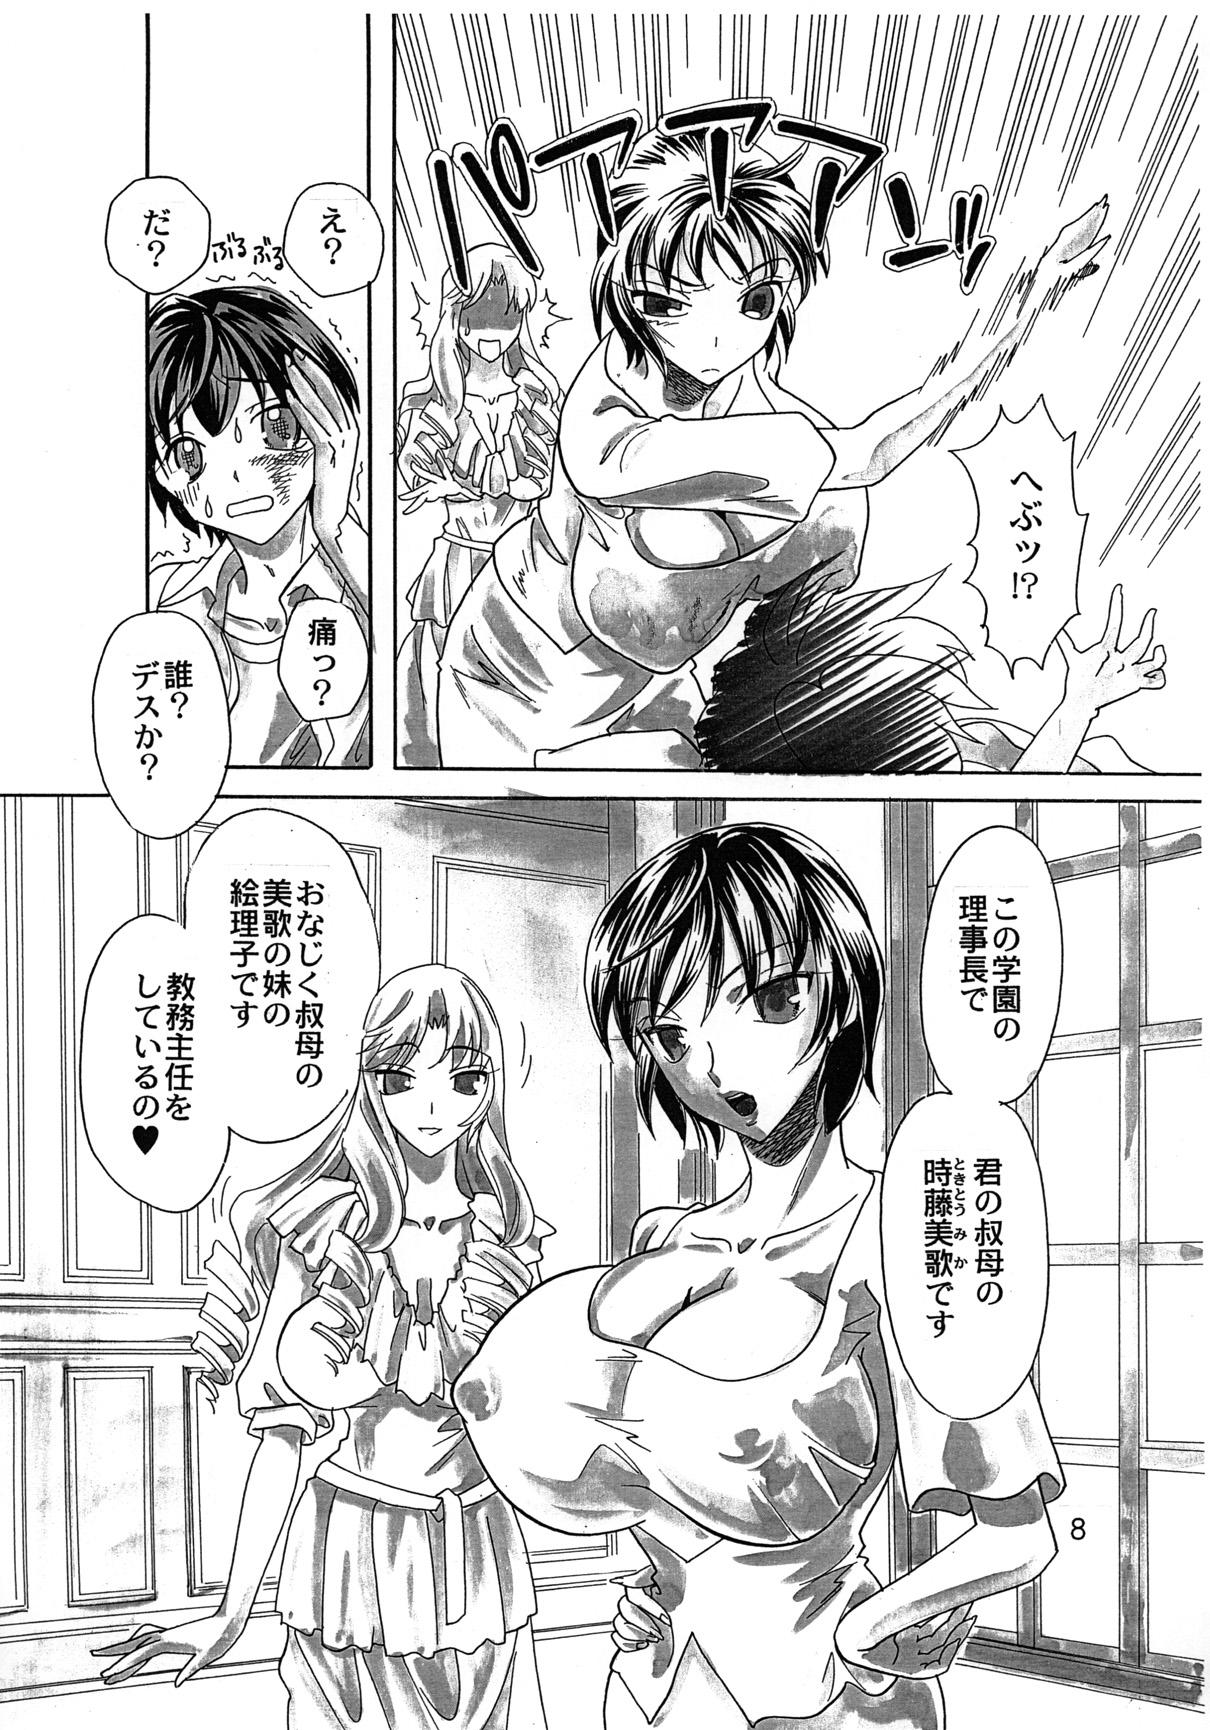 X Rakuen Jogakuen no Hanazono 1 18 Porn - Page 9